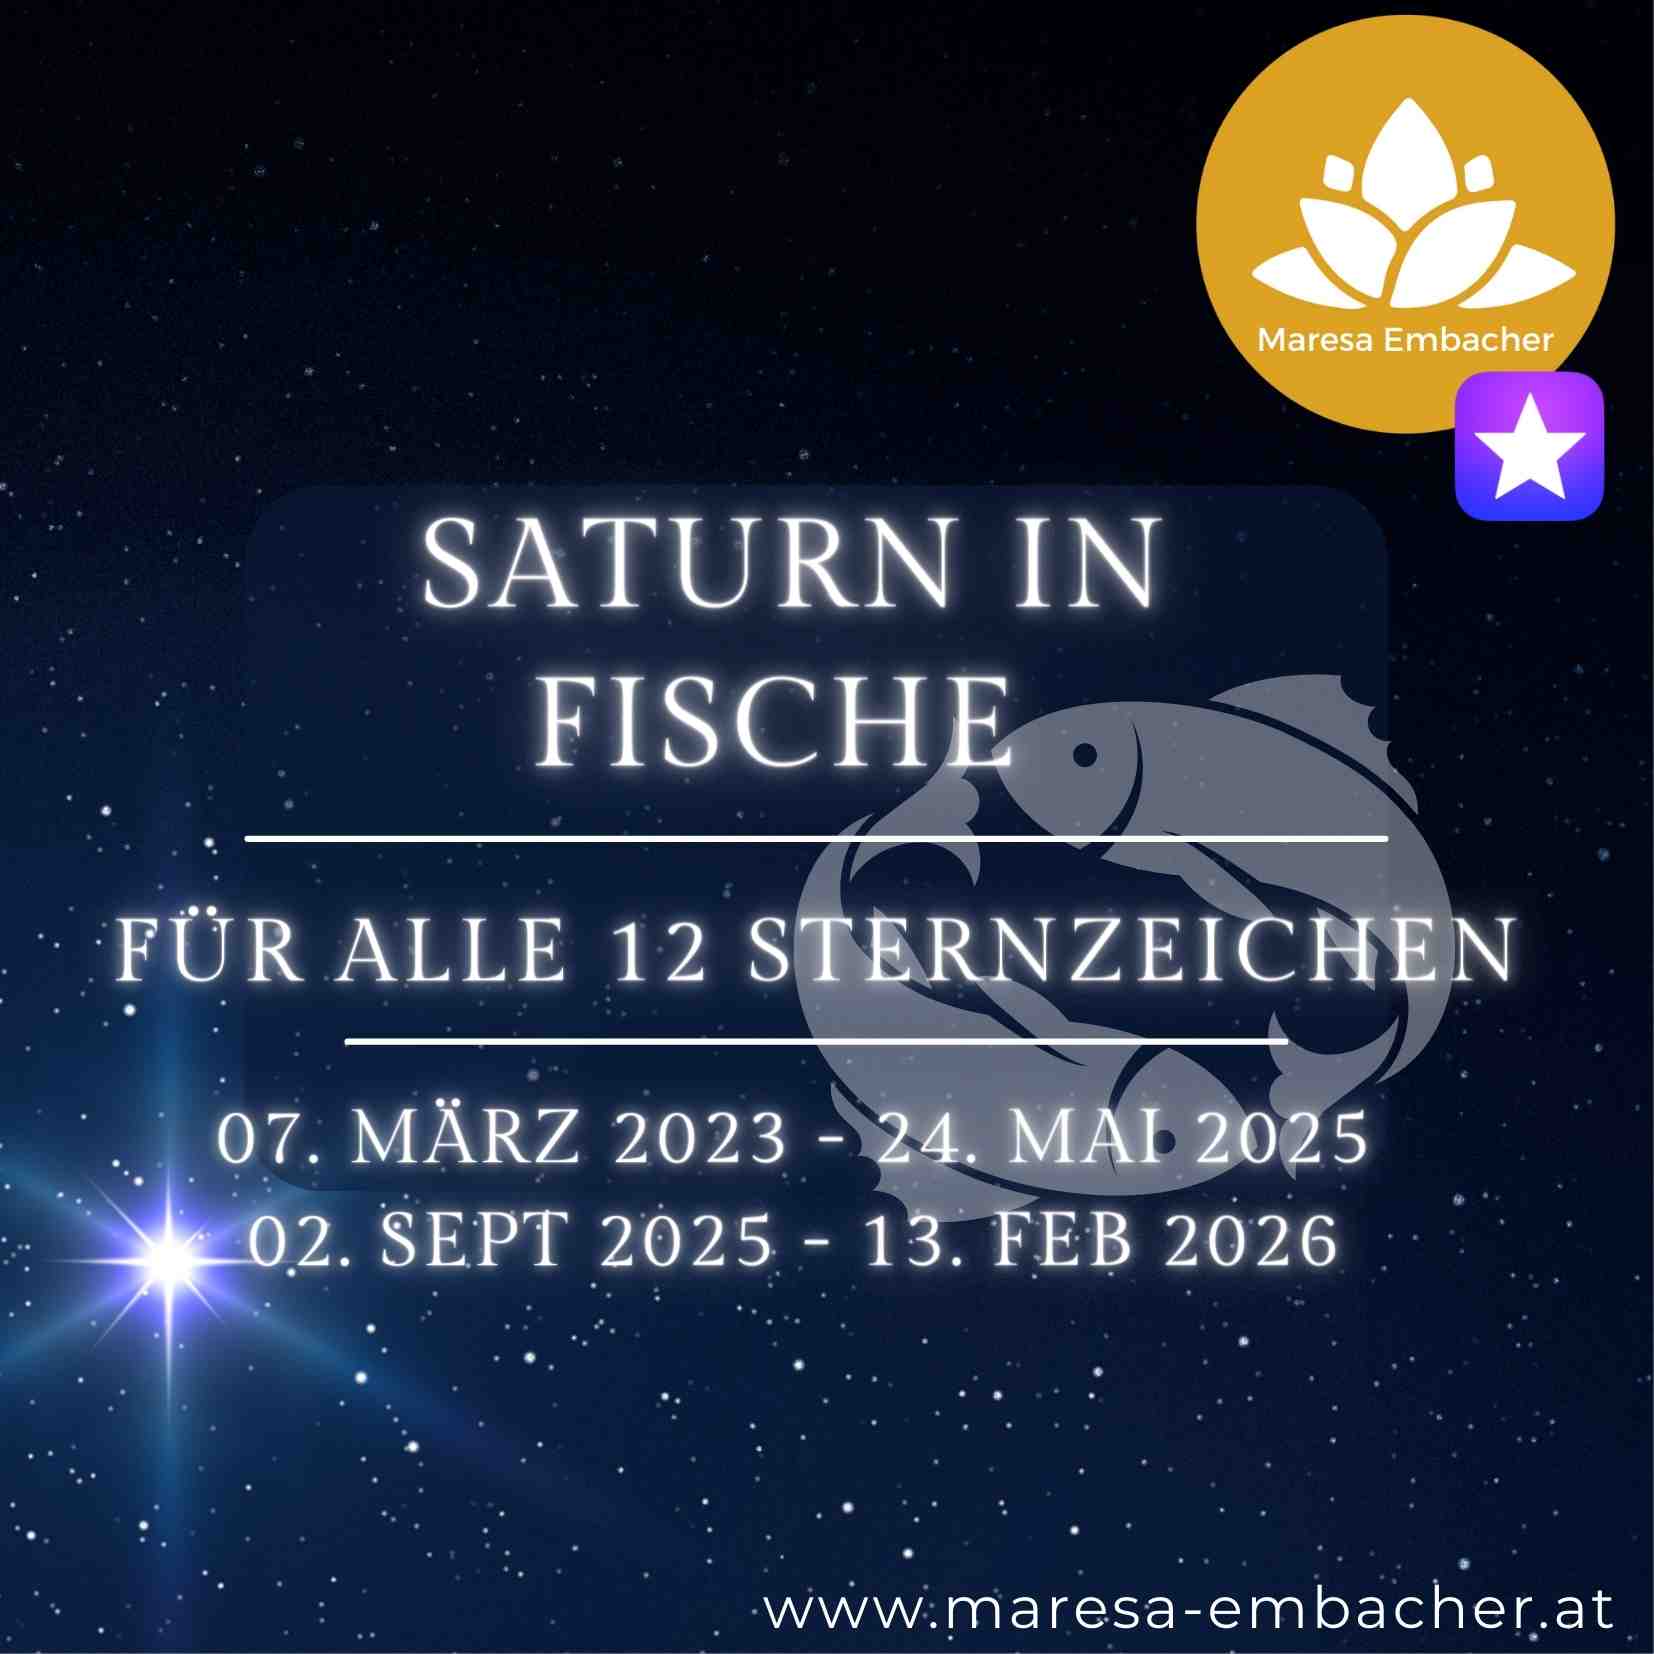 Saturn in Fische - Maresa Embacher